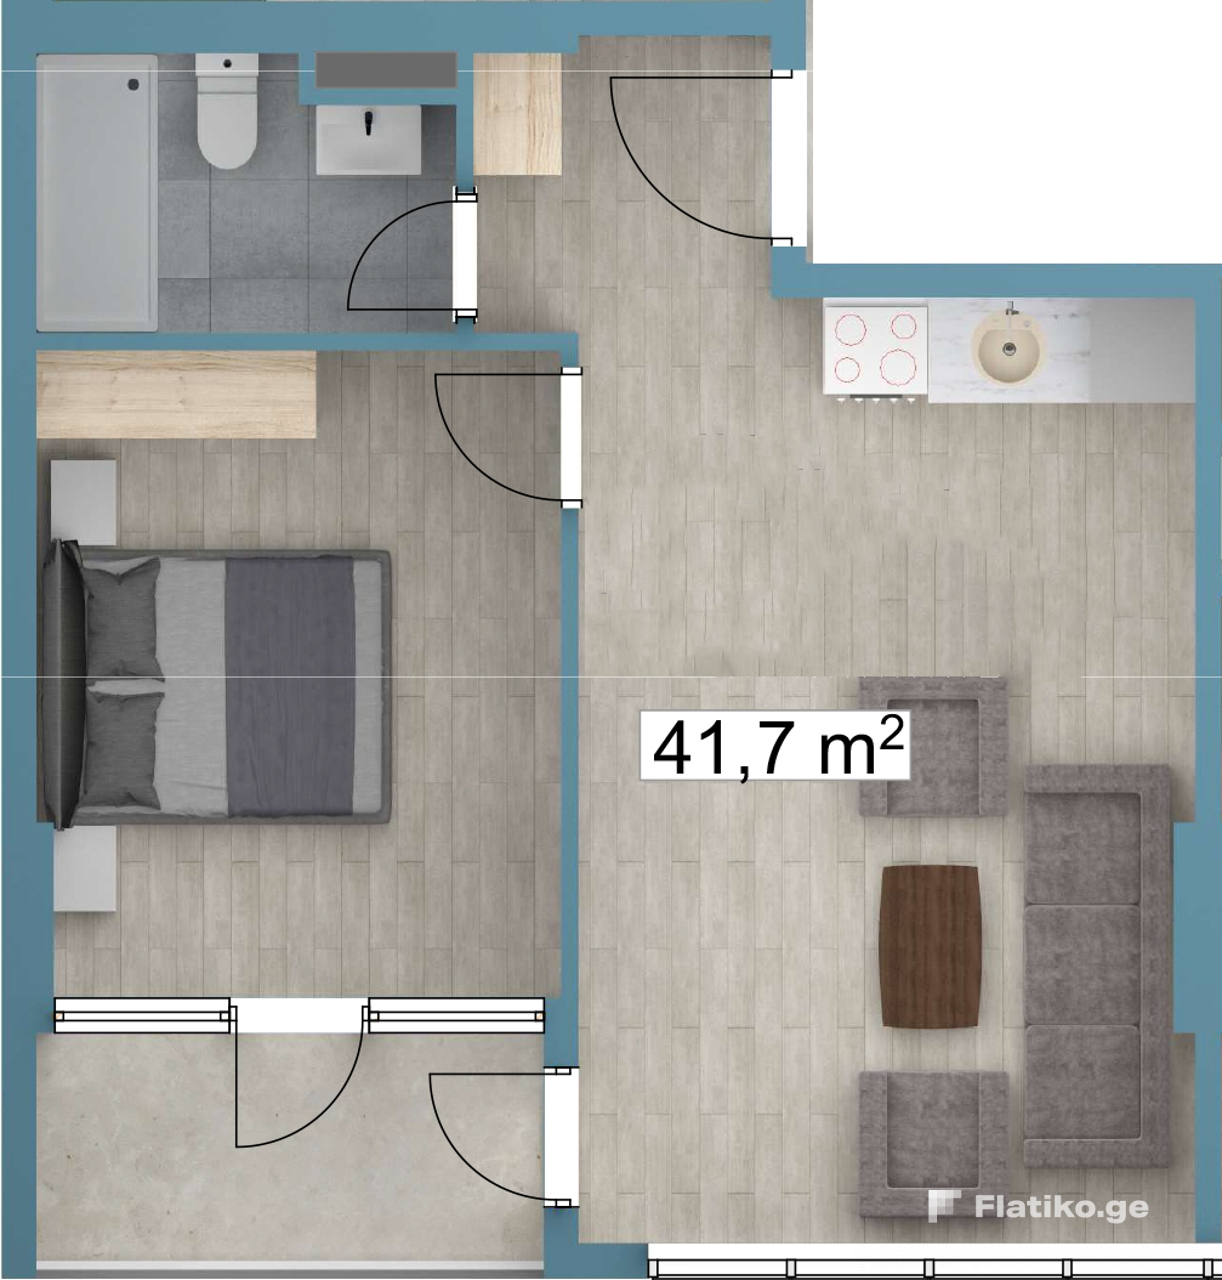 1-Bedroom